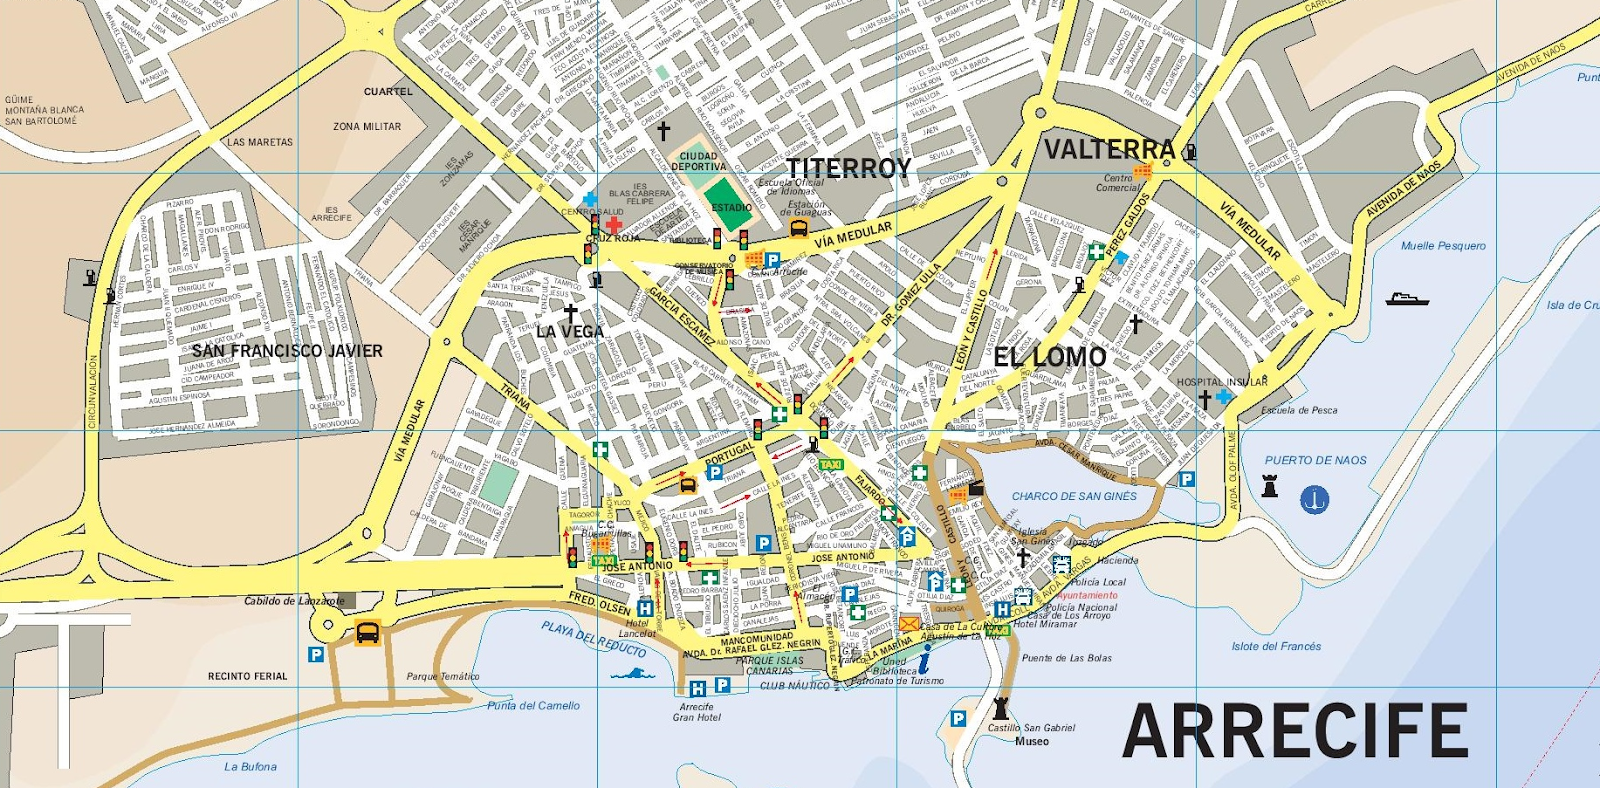 arrecife tourist map